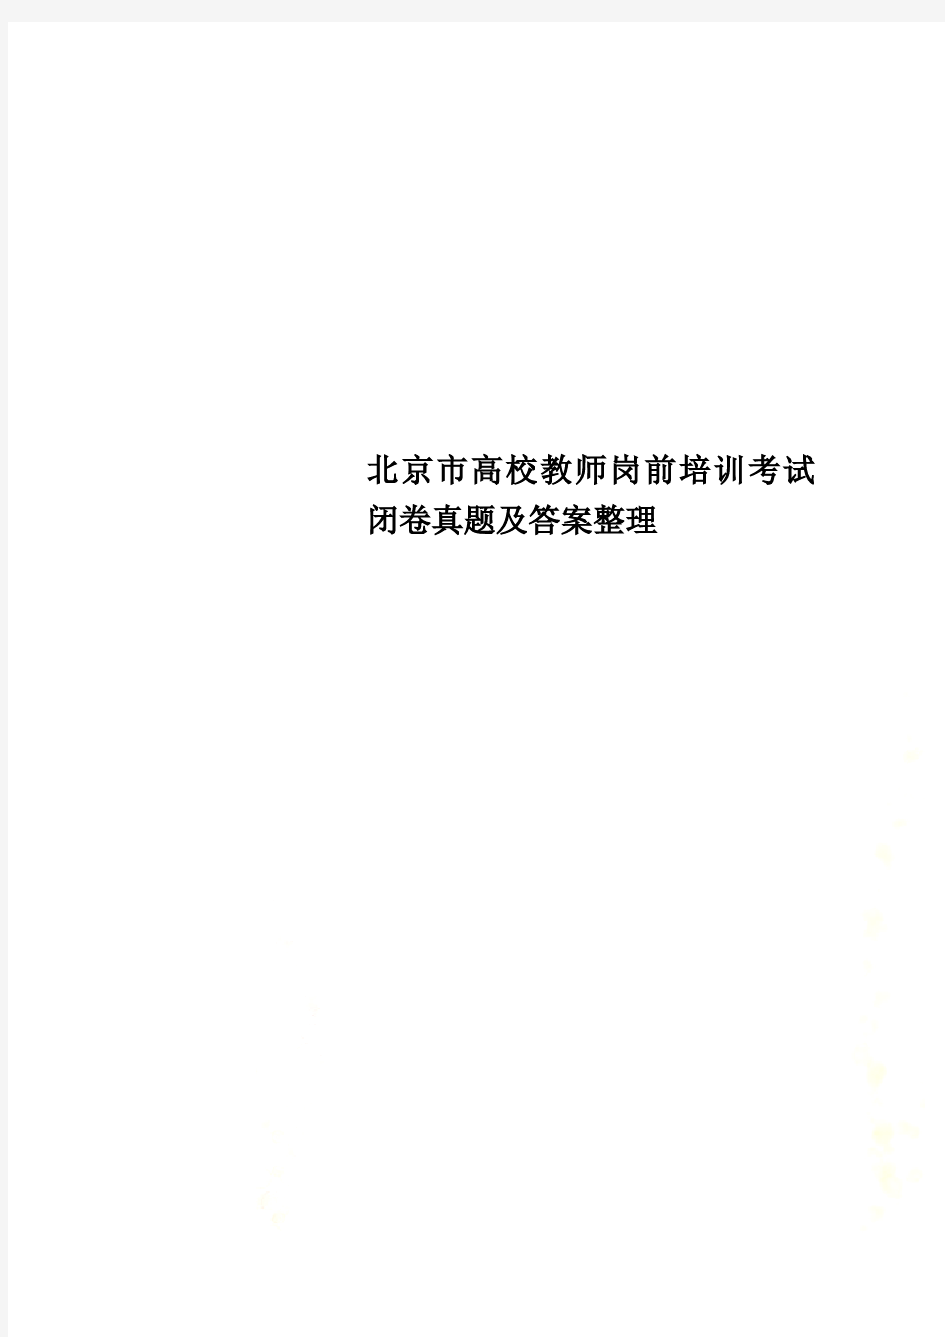 北京市高校教师岗前培训考试闭卷真题及答案整理